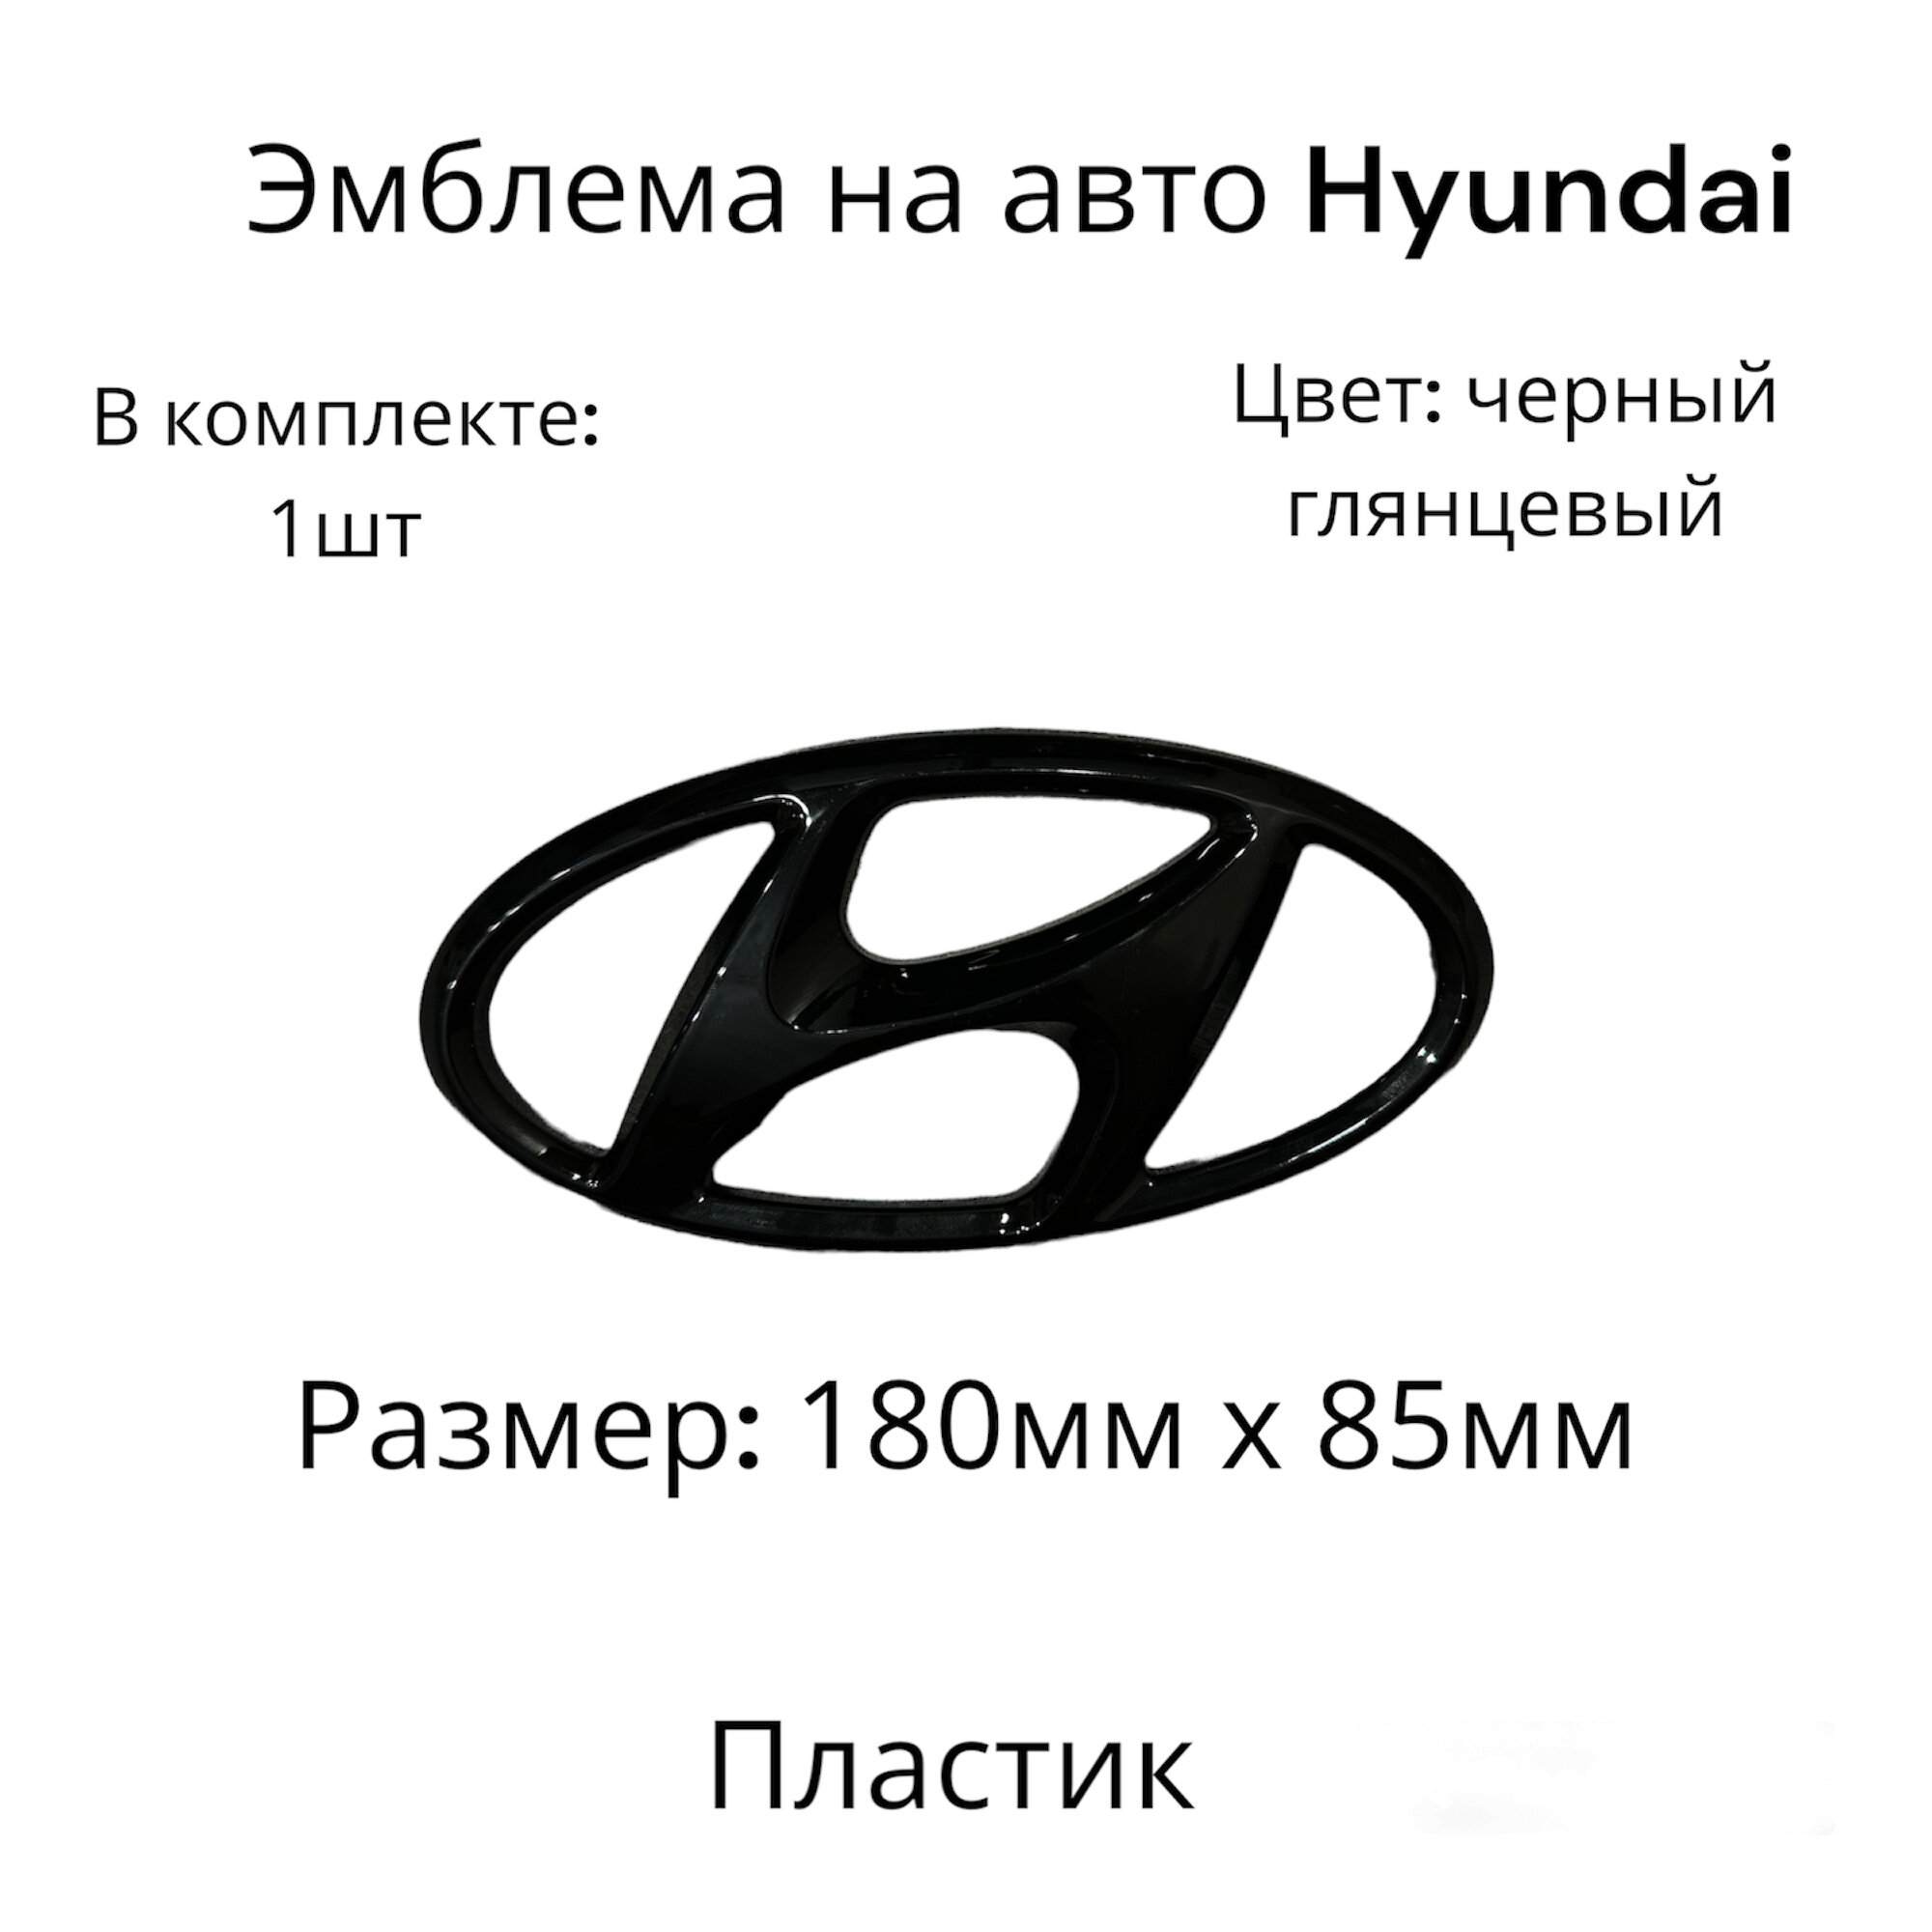 Эмблема на автомобиль Hyundai